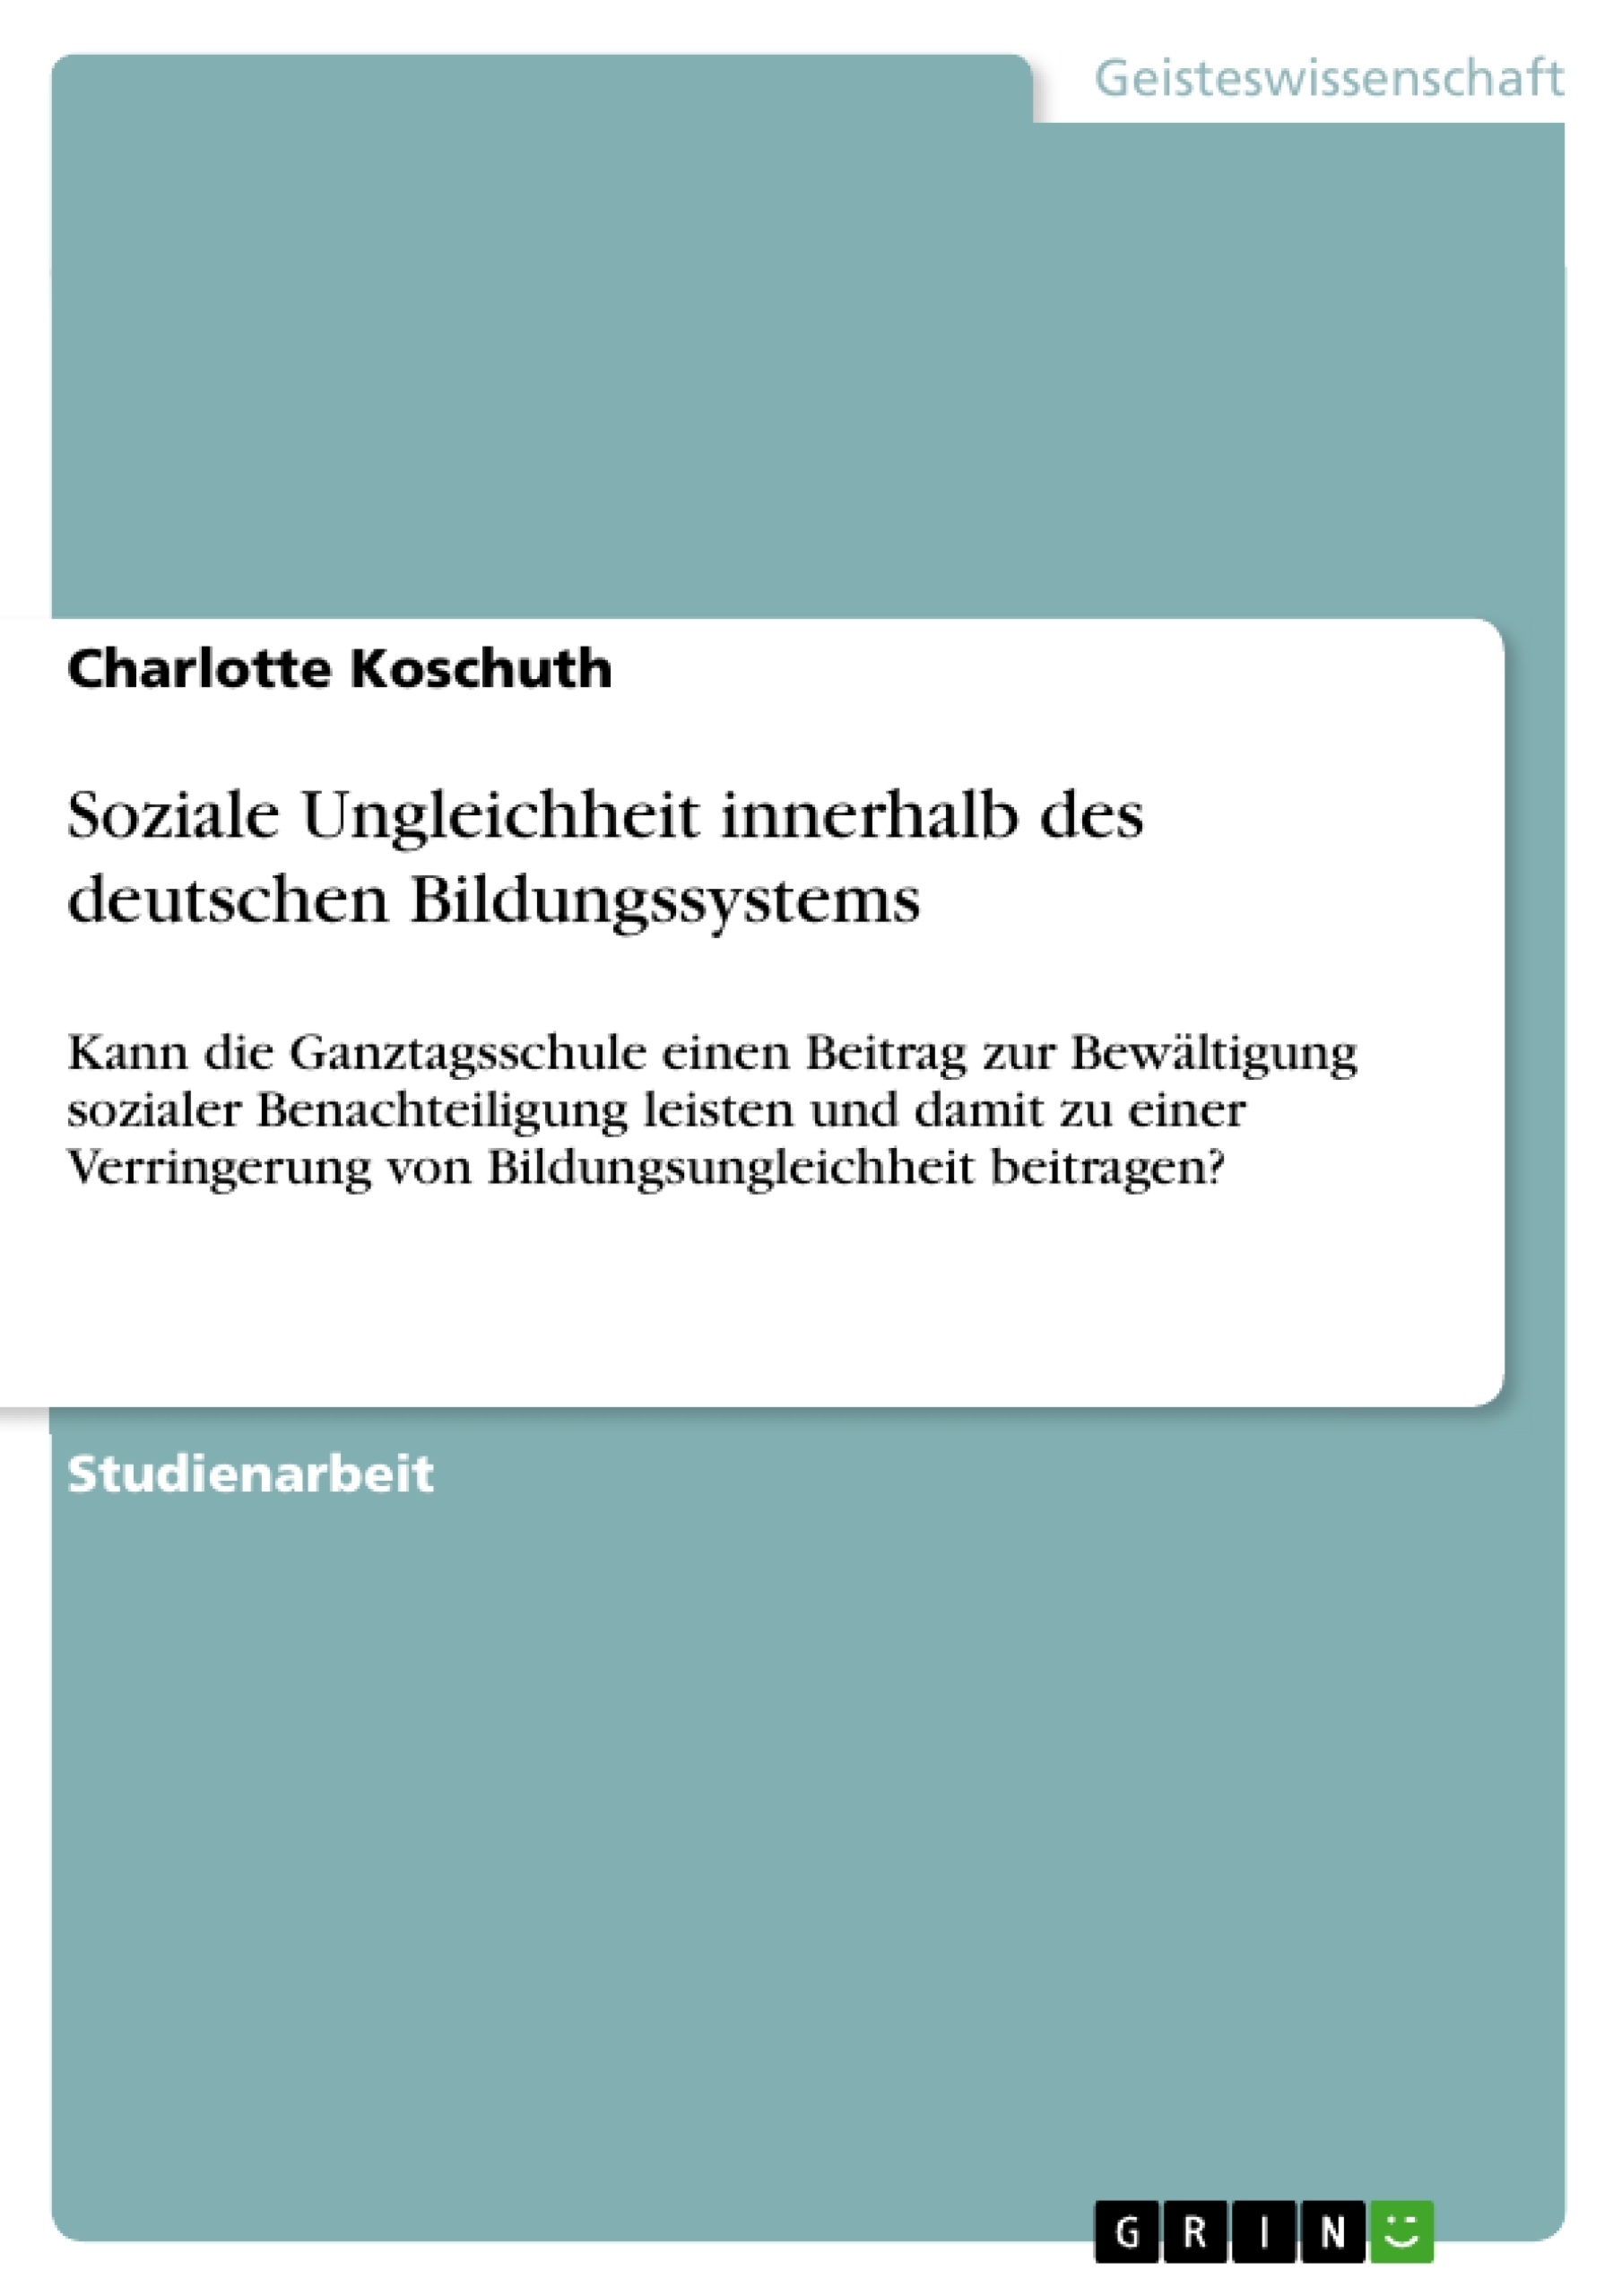 Titel: Soziale Ungleichheit innerhalb des deutschen Bildungssystems